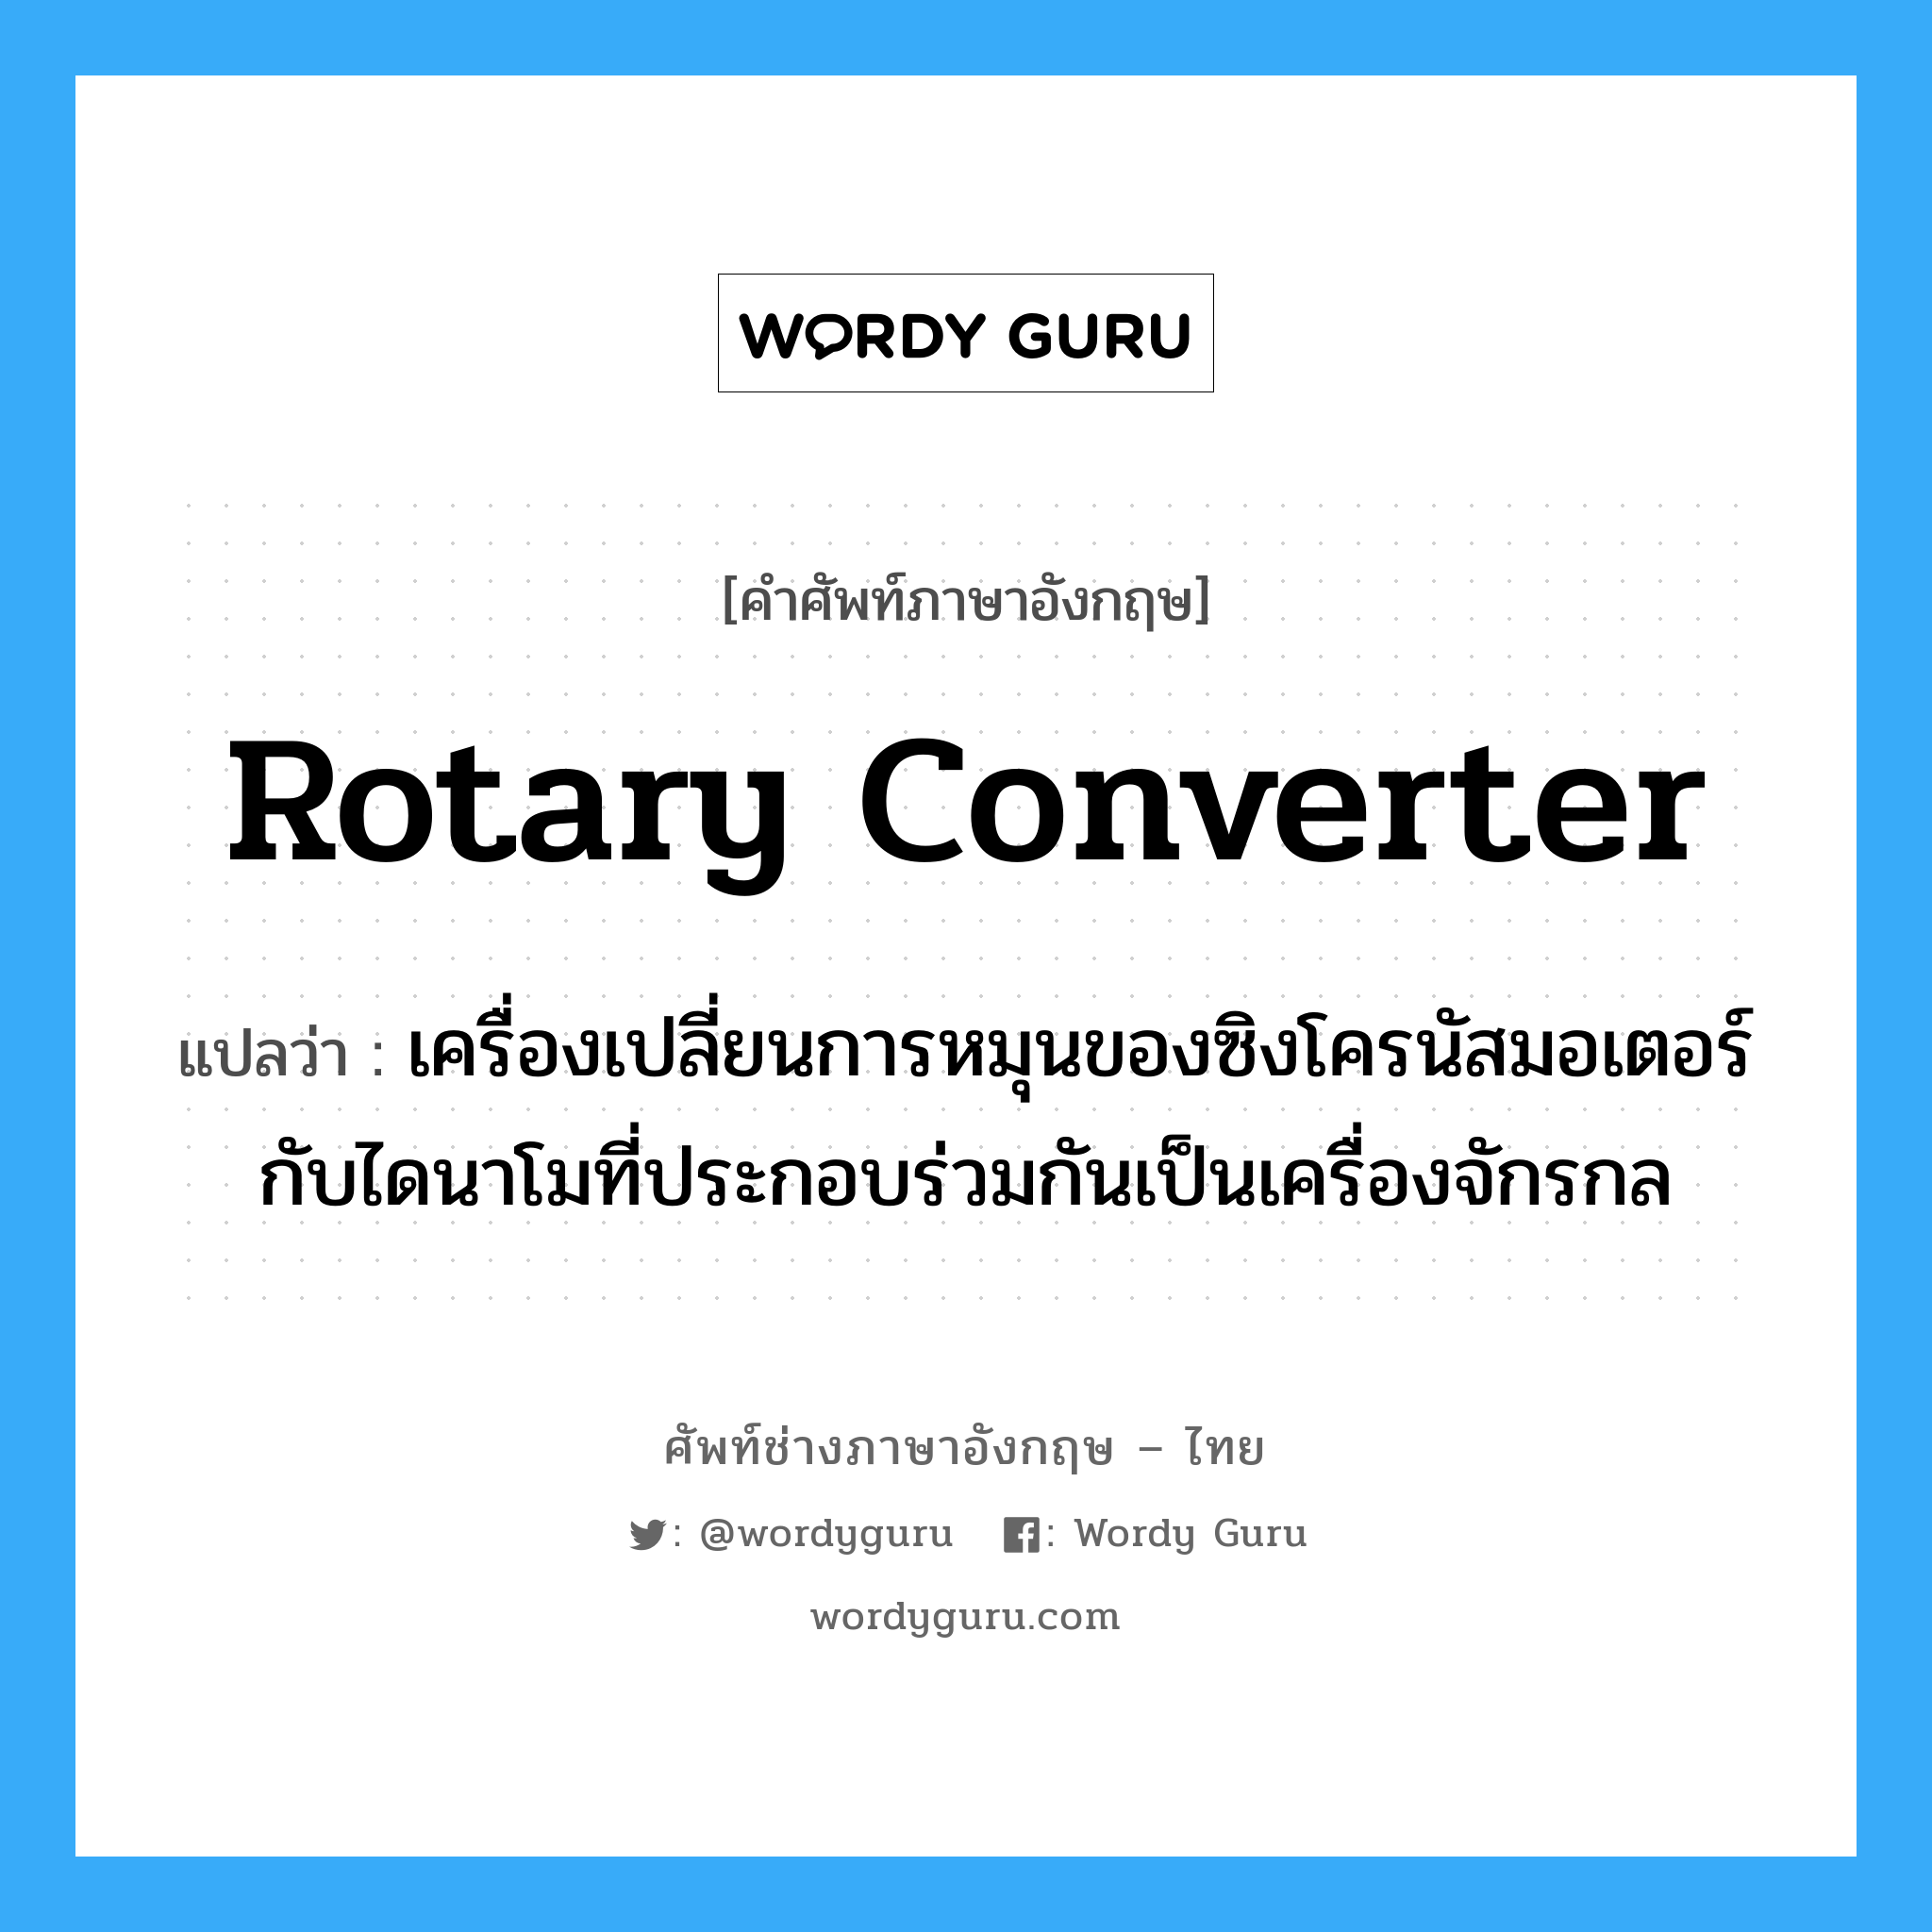 rotary converter แปลว่า?, คำศัพท์ช่างภาษาอังกฤษ - ไทย rotary converter คำศัพท์ภาษาอังกฤษ rotary converter แปลว่า เครื่องเปลี่ยนการหมุนของซิงโครนัสมอเตอร์ กับไดนาโมที่ประกอบร่วมกันเป็นเครื่องจักรกล